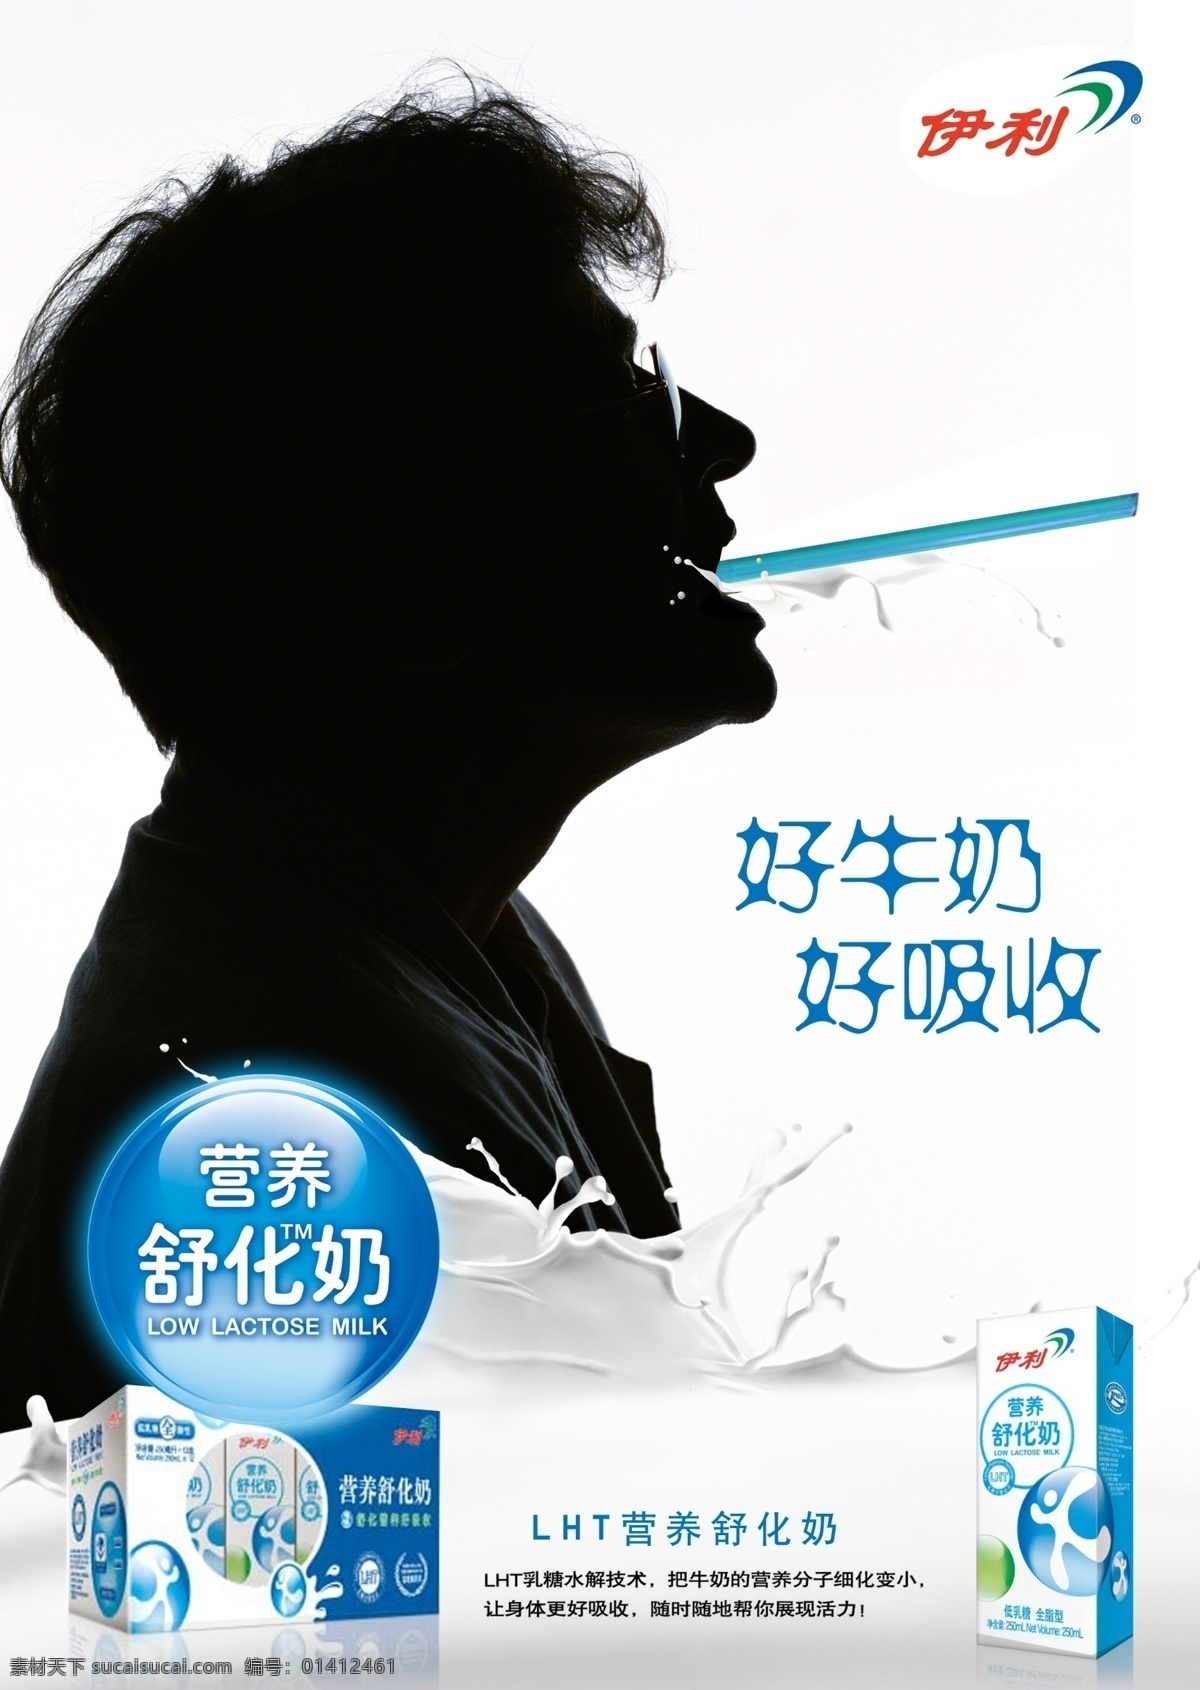 奶制品 形象 蓝色质感小球 白底牛奶广告 原创设计 原创海报